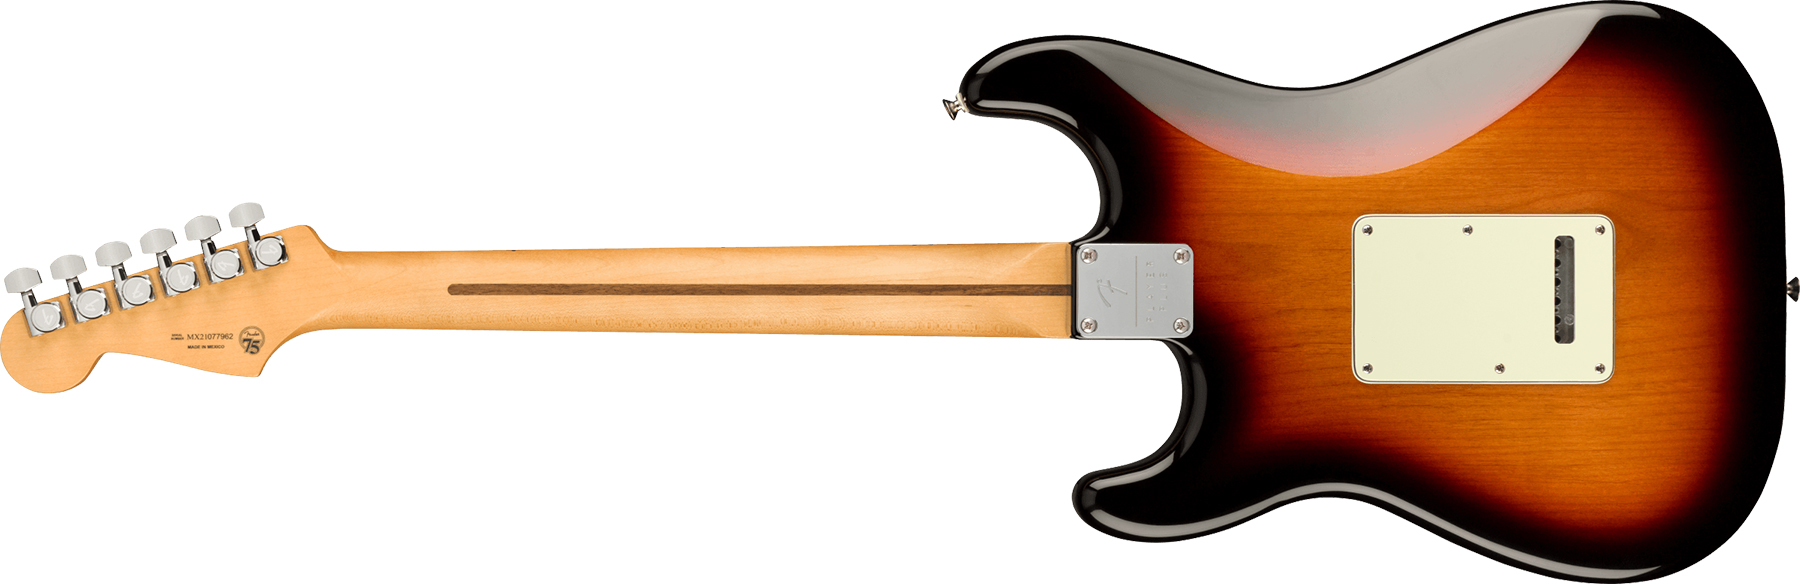 Fender Strat Player Plus Mex Hss Trem Mn - 3-color Sunburst - Guitarra eléctrica con forma de str. - Variation 1